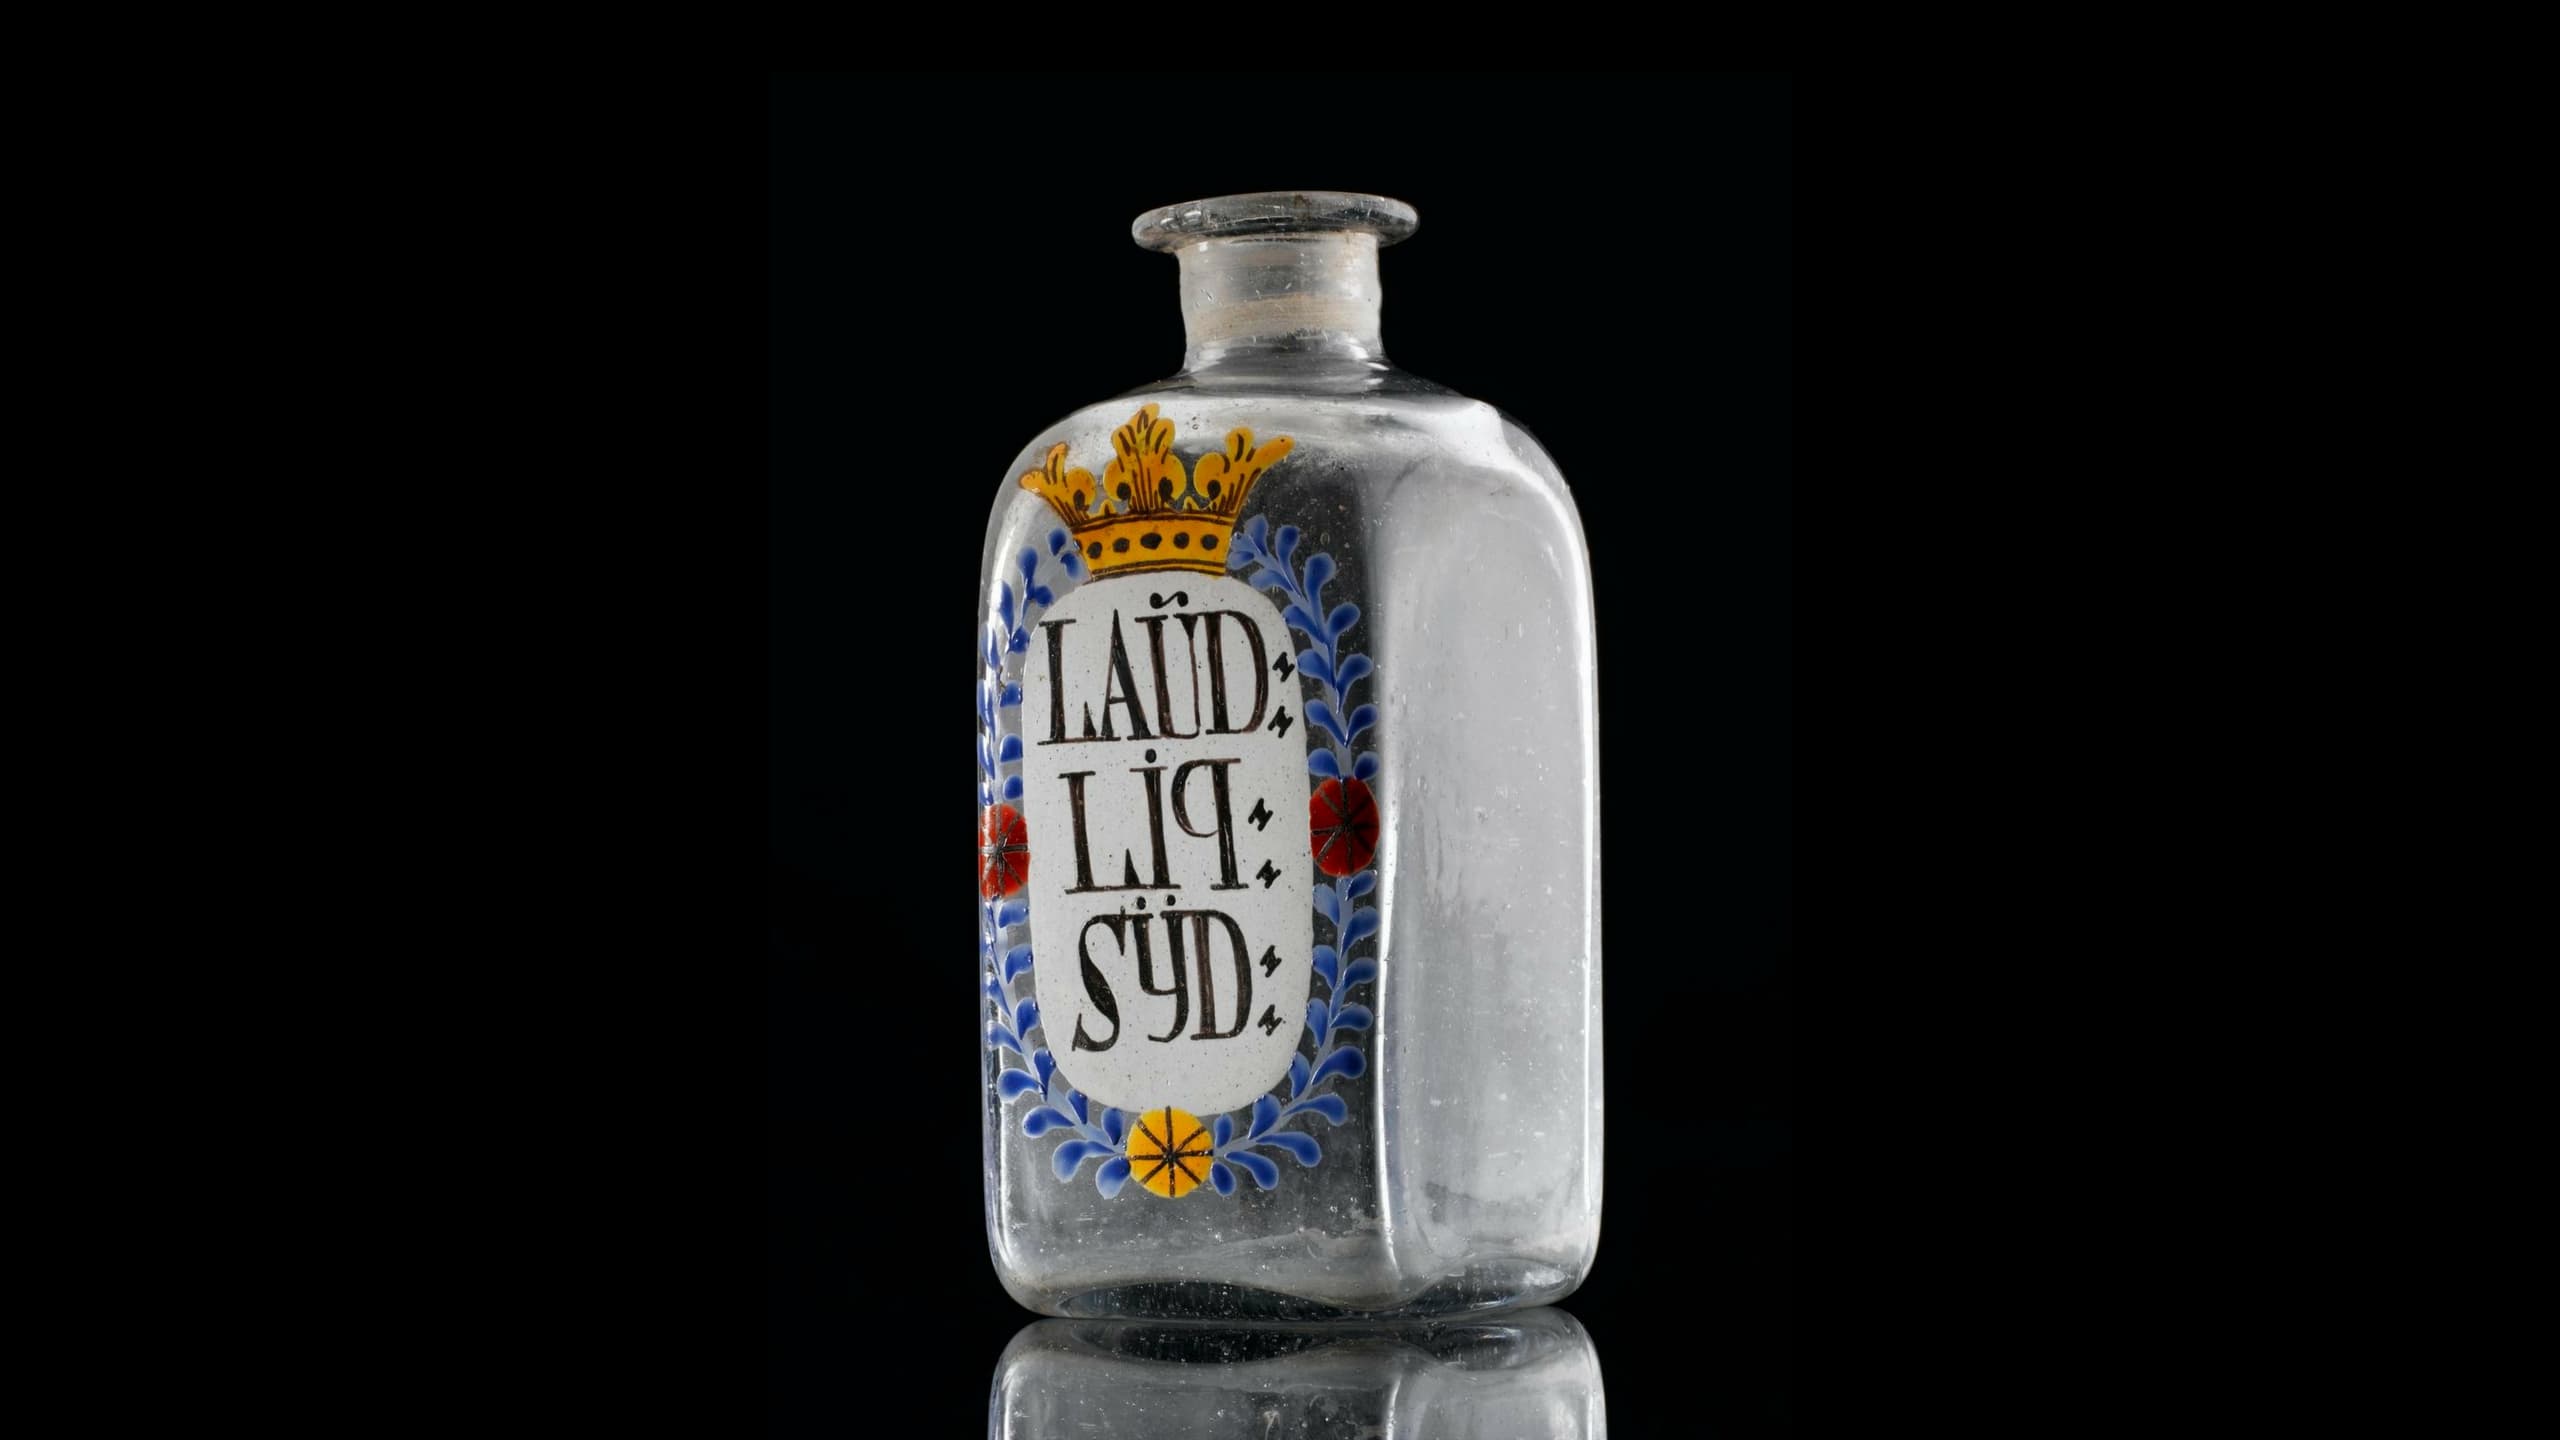 Apothekerflasche für Sydenham's Laudanum, mit gemalter Aufschrift LAUD: LIQ: SYD. Vermutlich Deutschland, 19. Jahrhundert.